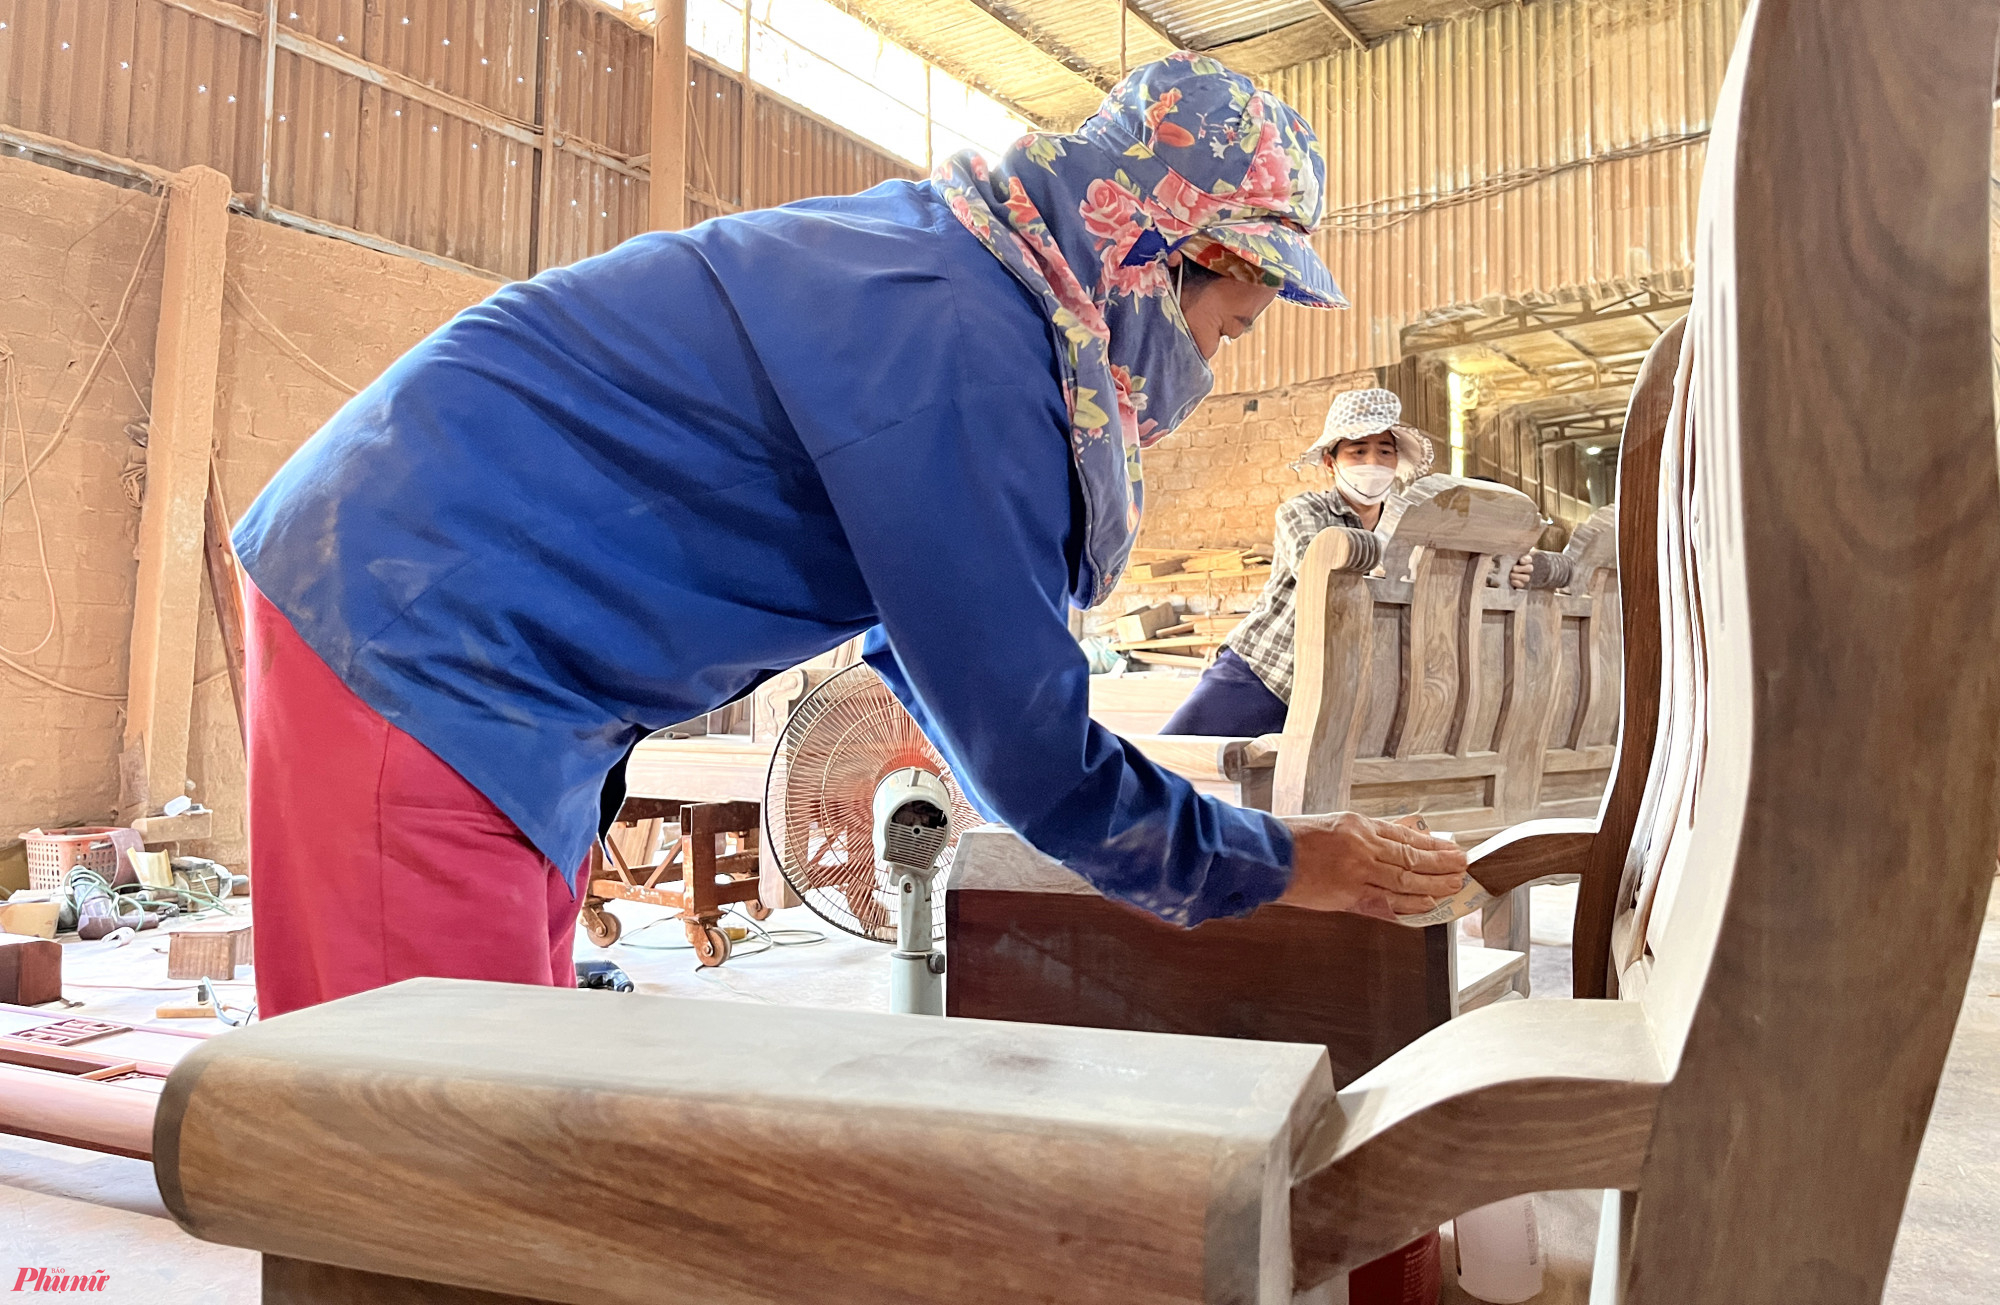 Bà Vũ Thị Thuý (50 tuổi, trú xã Quỳnh Hưng) cho biết, công việc chà nhám là một trong những khâu quan trọng trong sản xuất đồ gỗ nội thất. Để các sản phẩm được đẹp mắt, tinh xảo thì trải qua quy trình chà nhám cẩn thận và kĩ lưỡng. 